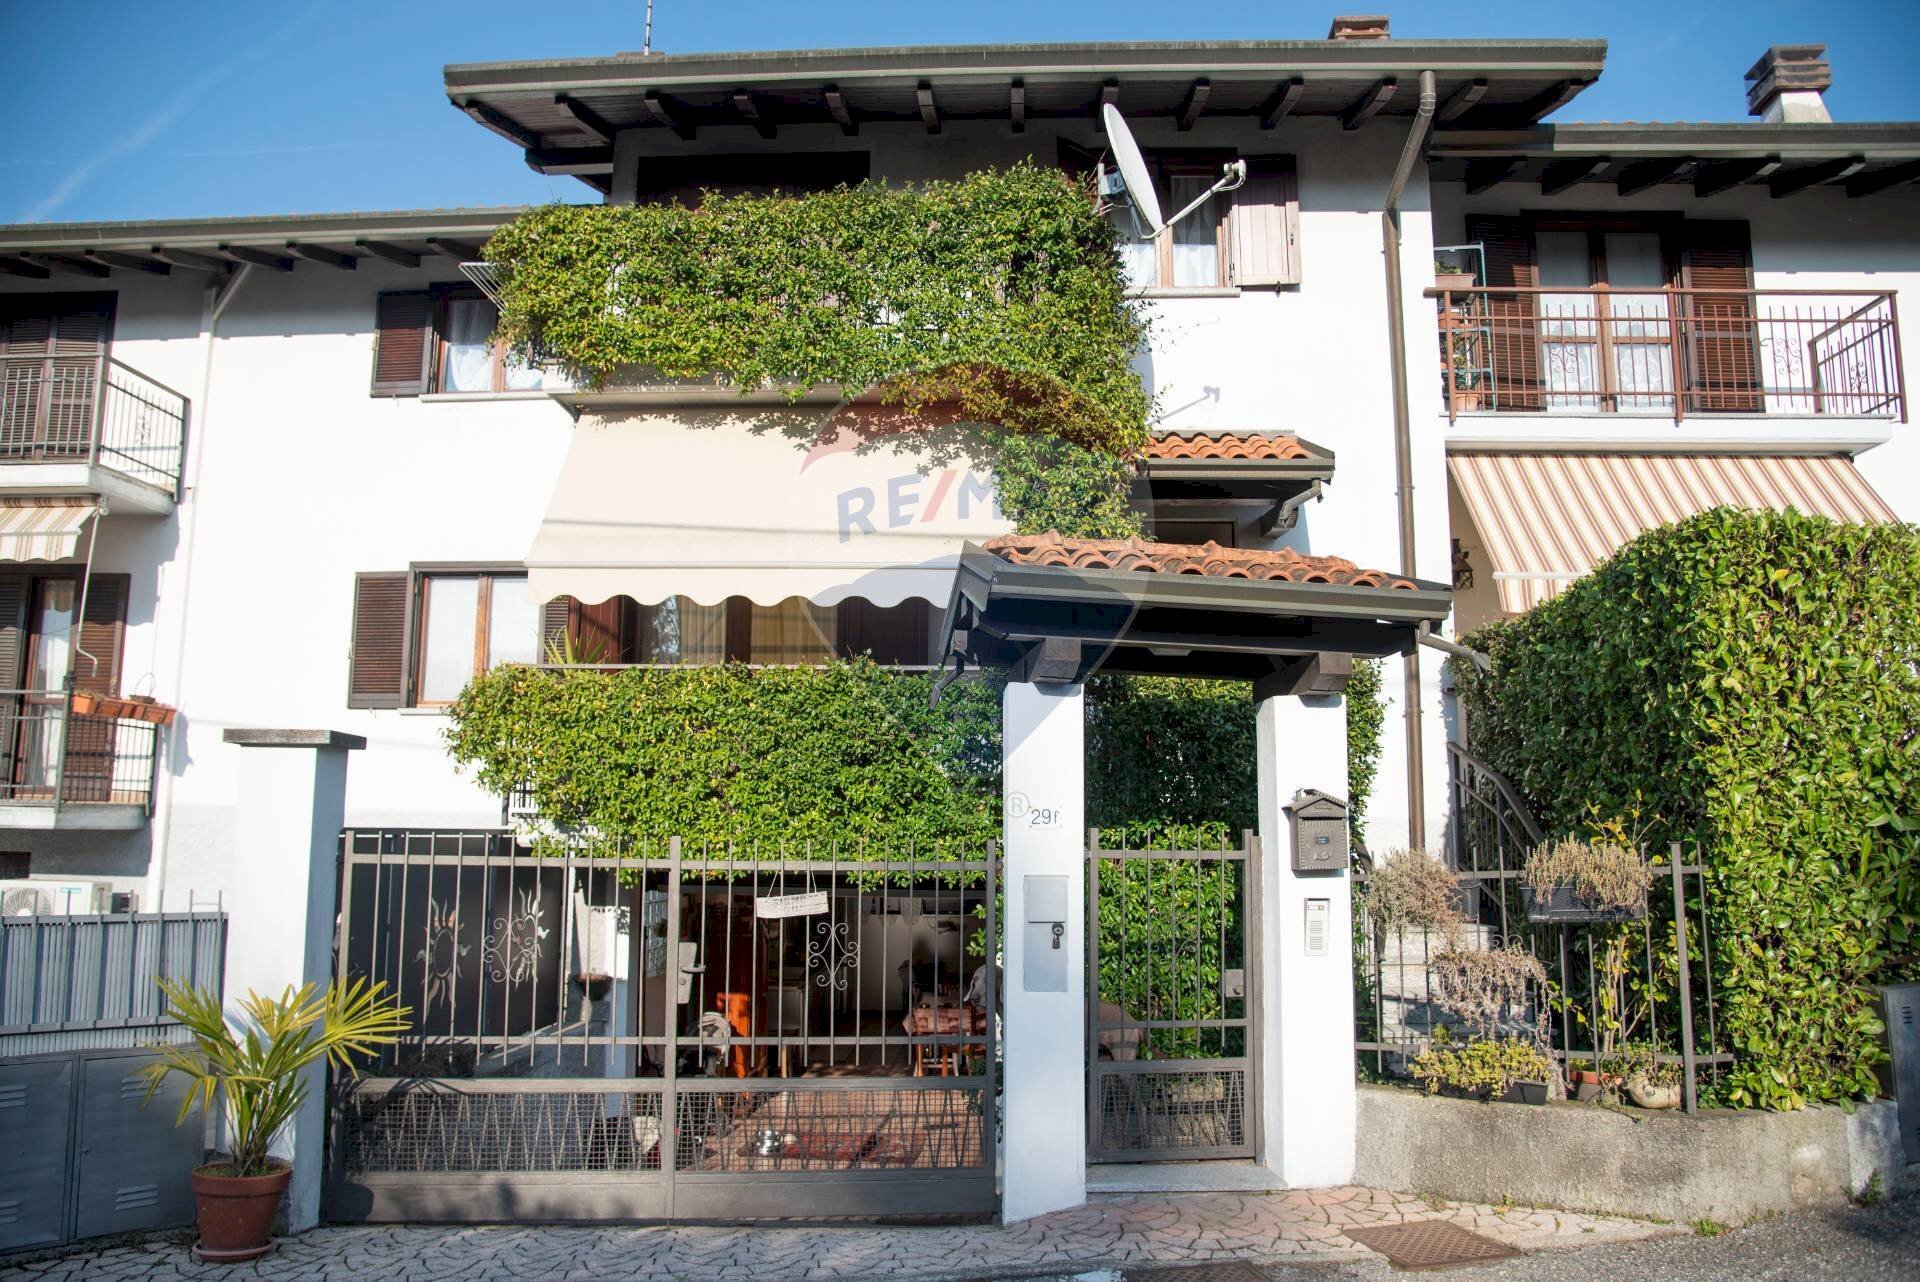 Vendita Villa a Schiera Via Copelli, 29
Luino, Luino